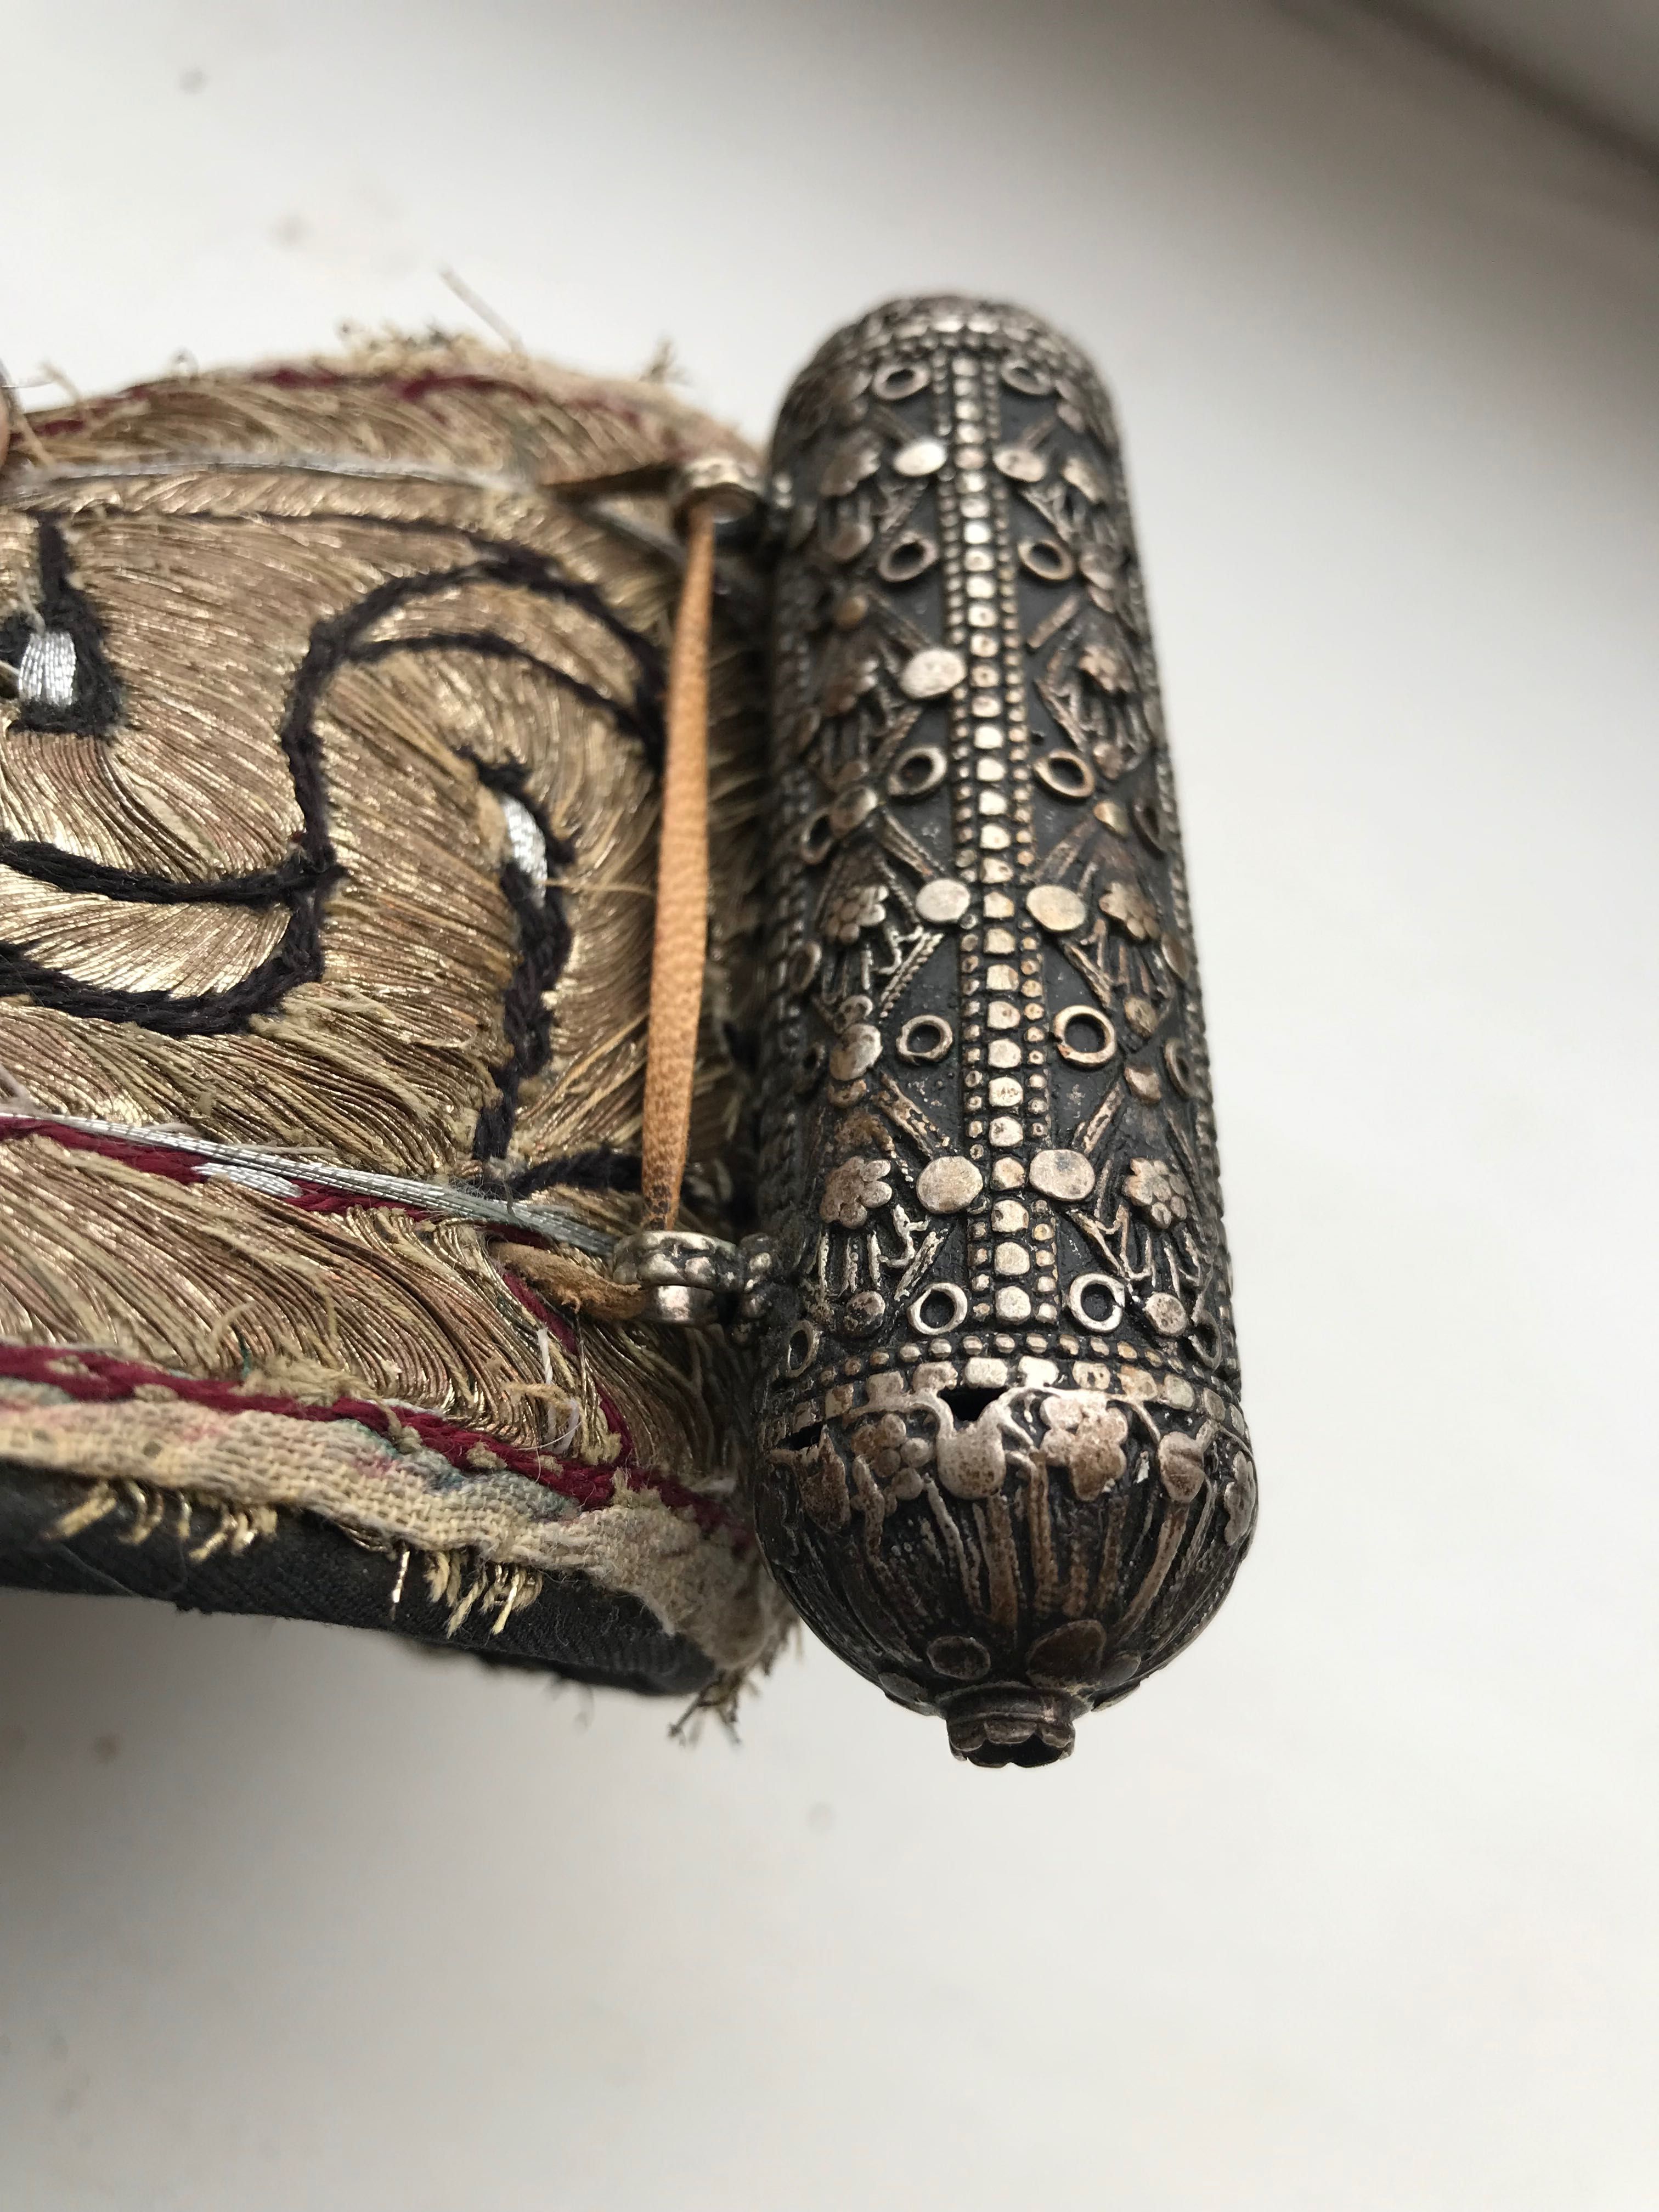 Антикварный пояс и ножны для арабского ножа,кинжала